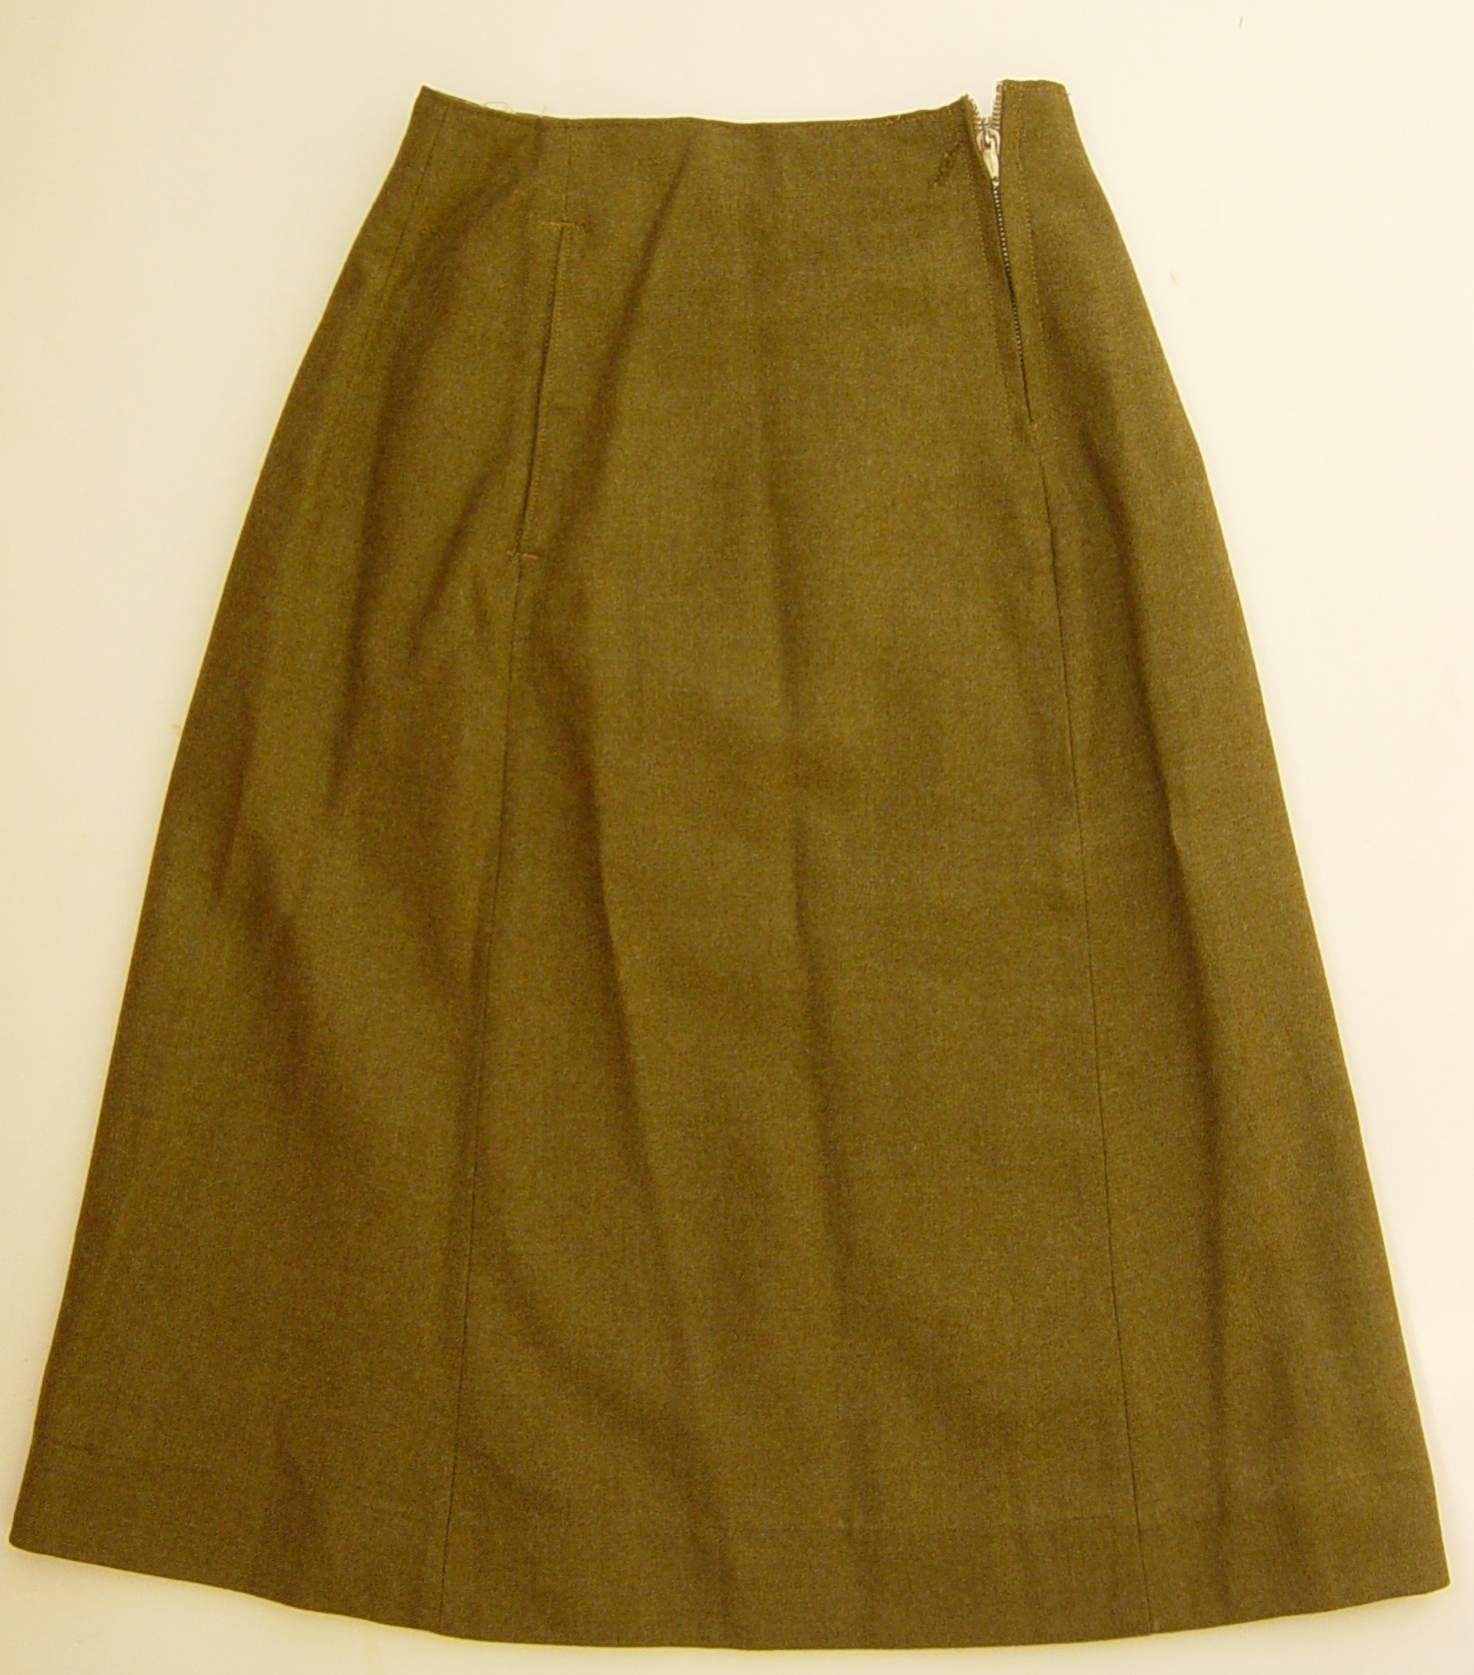 Skirt, Serge, ATS 1941 pattern